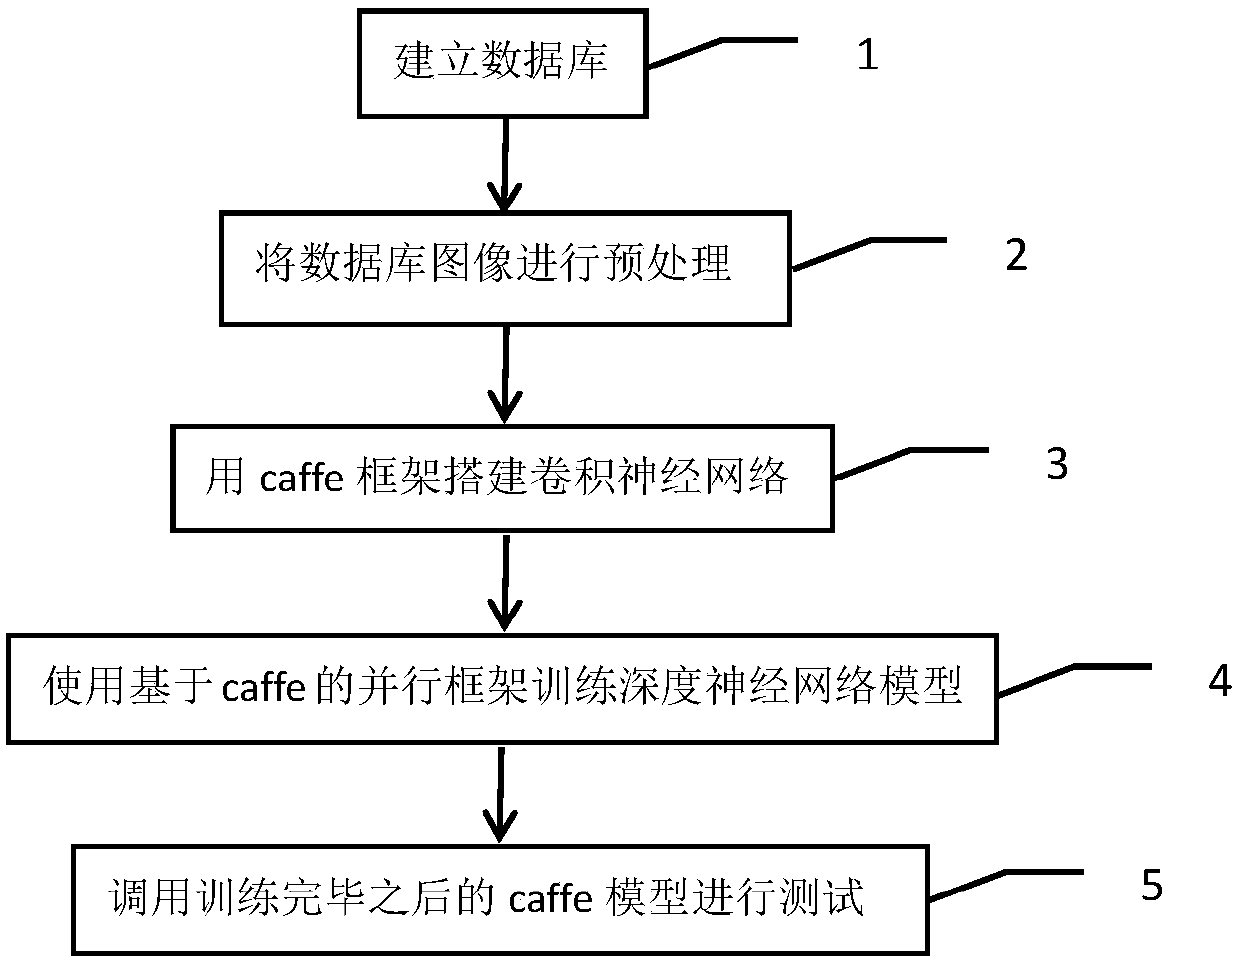 Face recognition method based on caffe deep learning framework